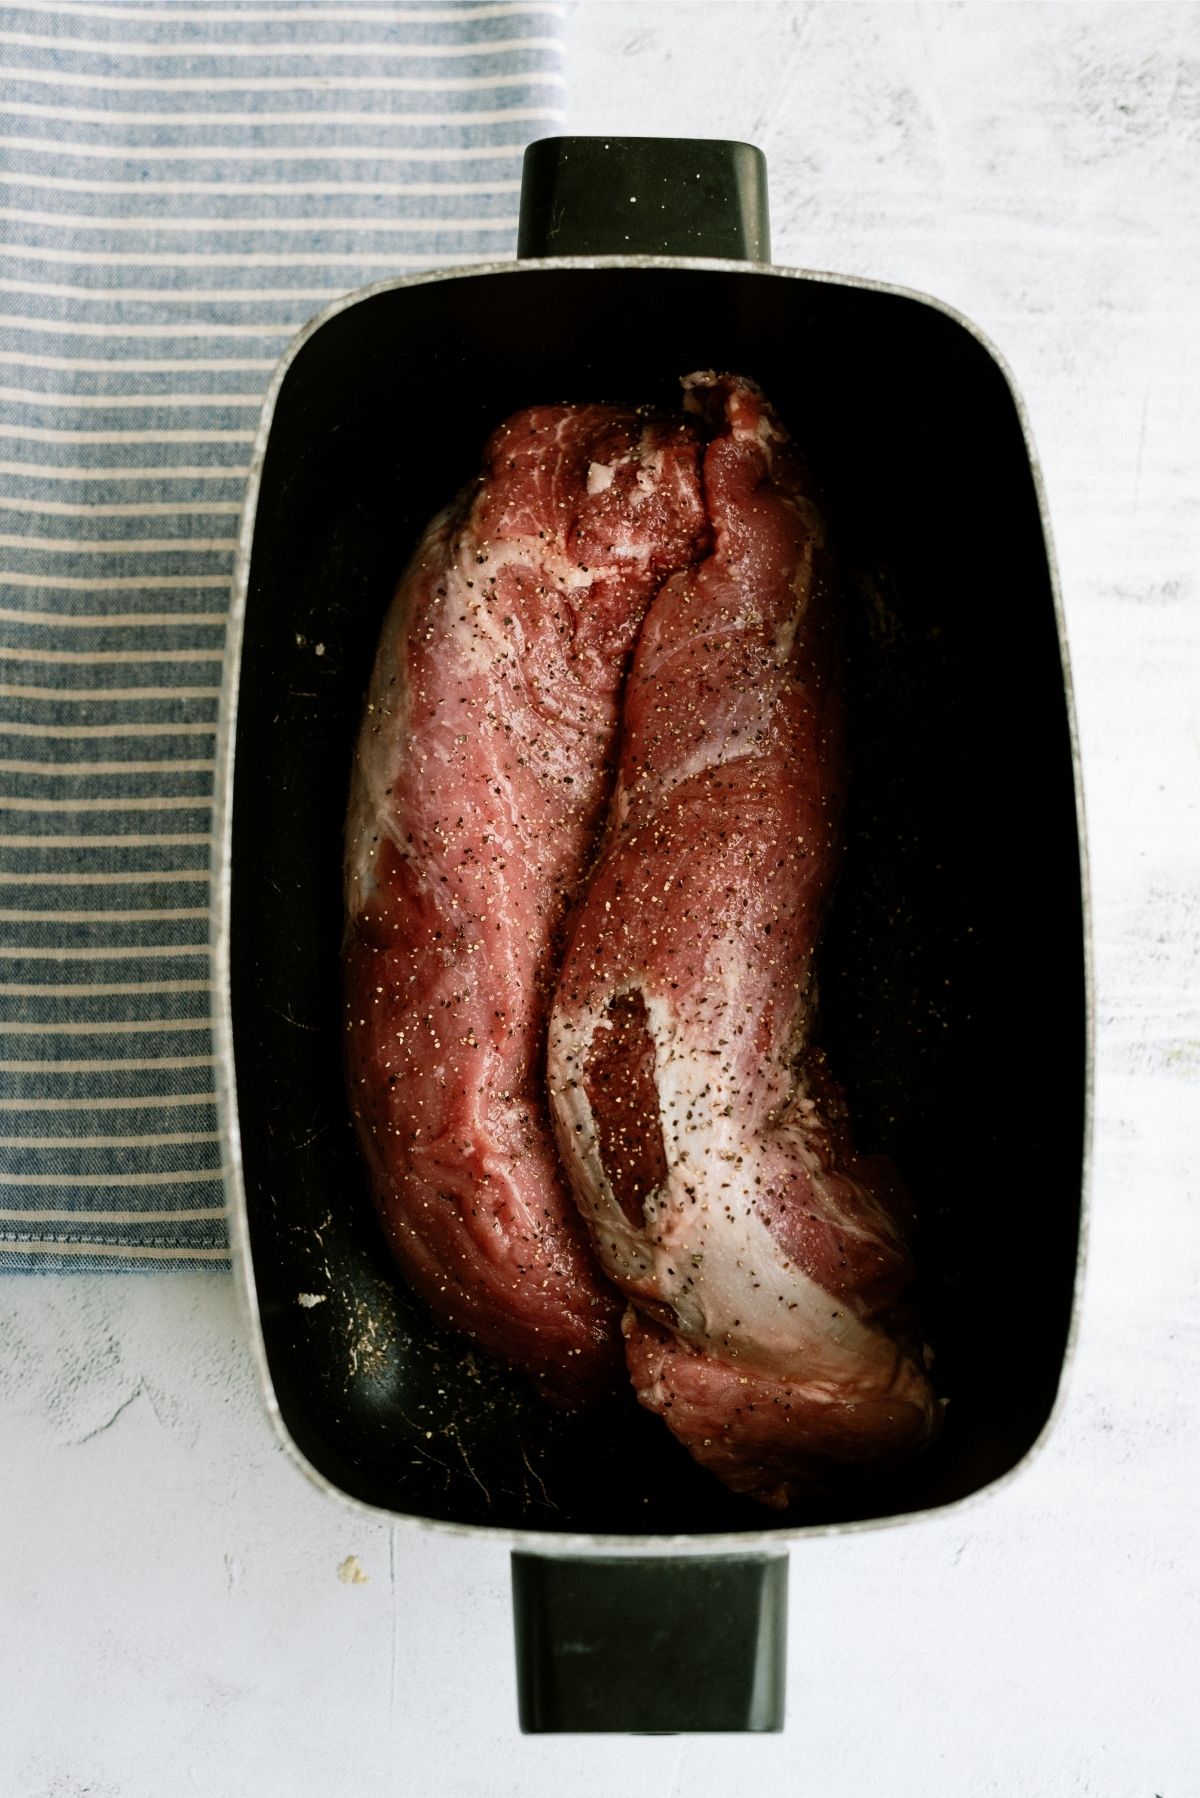 Uncooked pork tenderloin in slow cooker